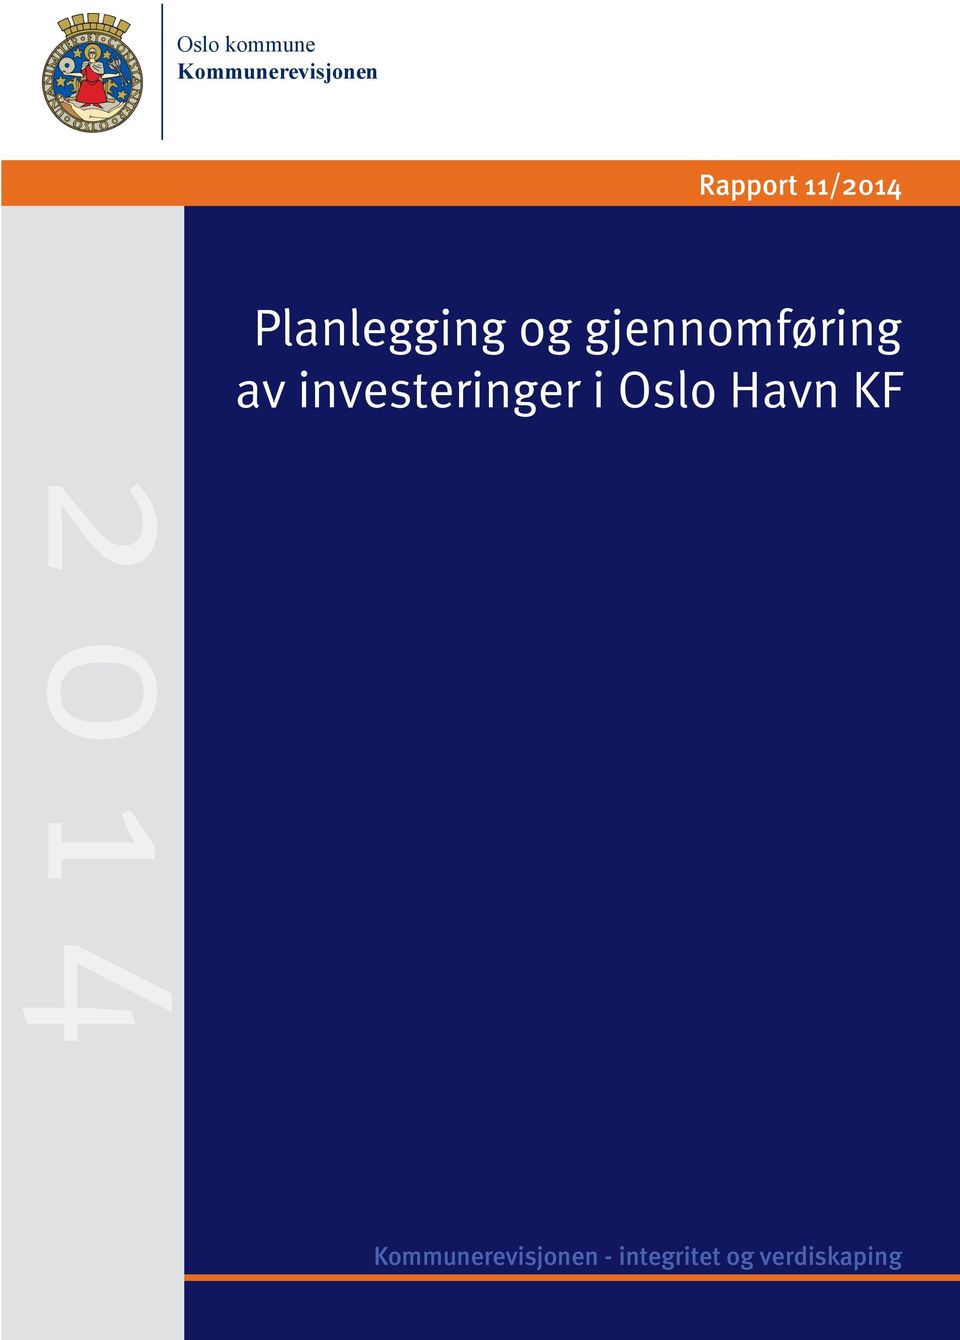 investeringer i Oslo Havn KF 2